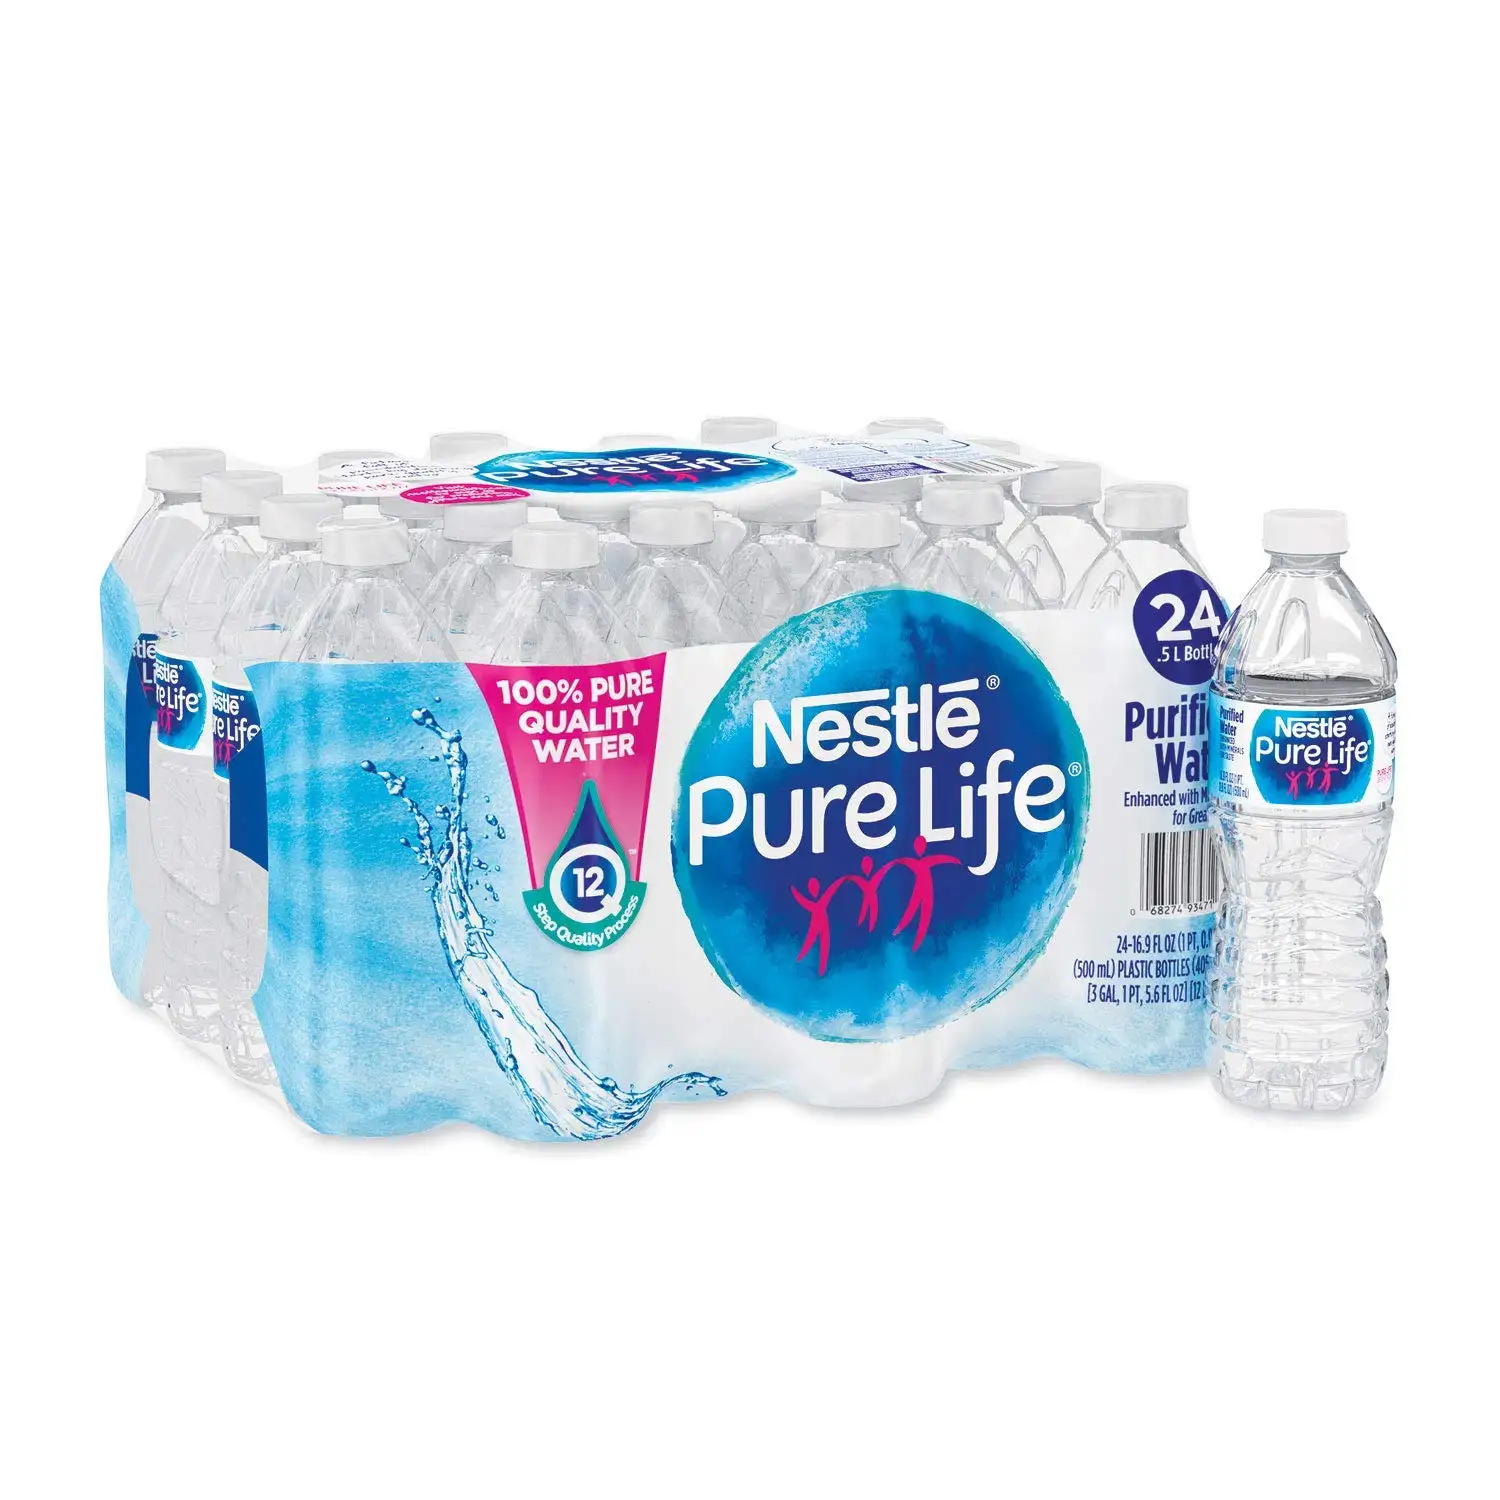 ซื้อน้ําดื่มบรรจุขวด Nestle- Pure Life - ขวดขนาด 12 x 1.5 ลิตรในราคาที่ดีที่สุด